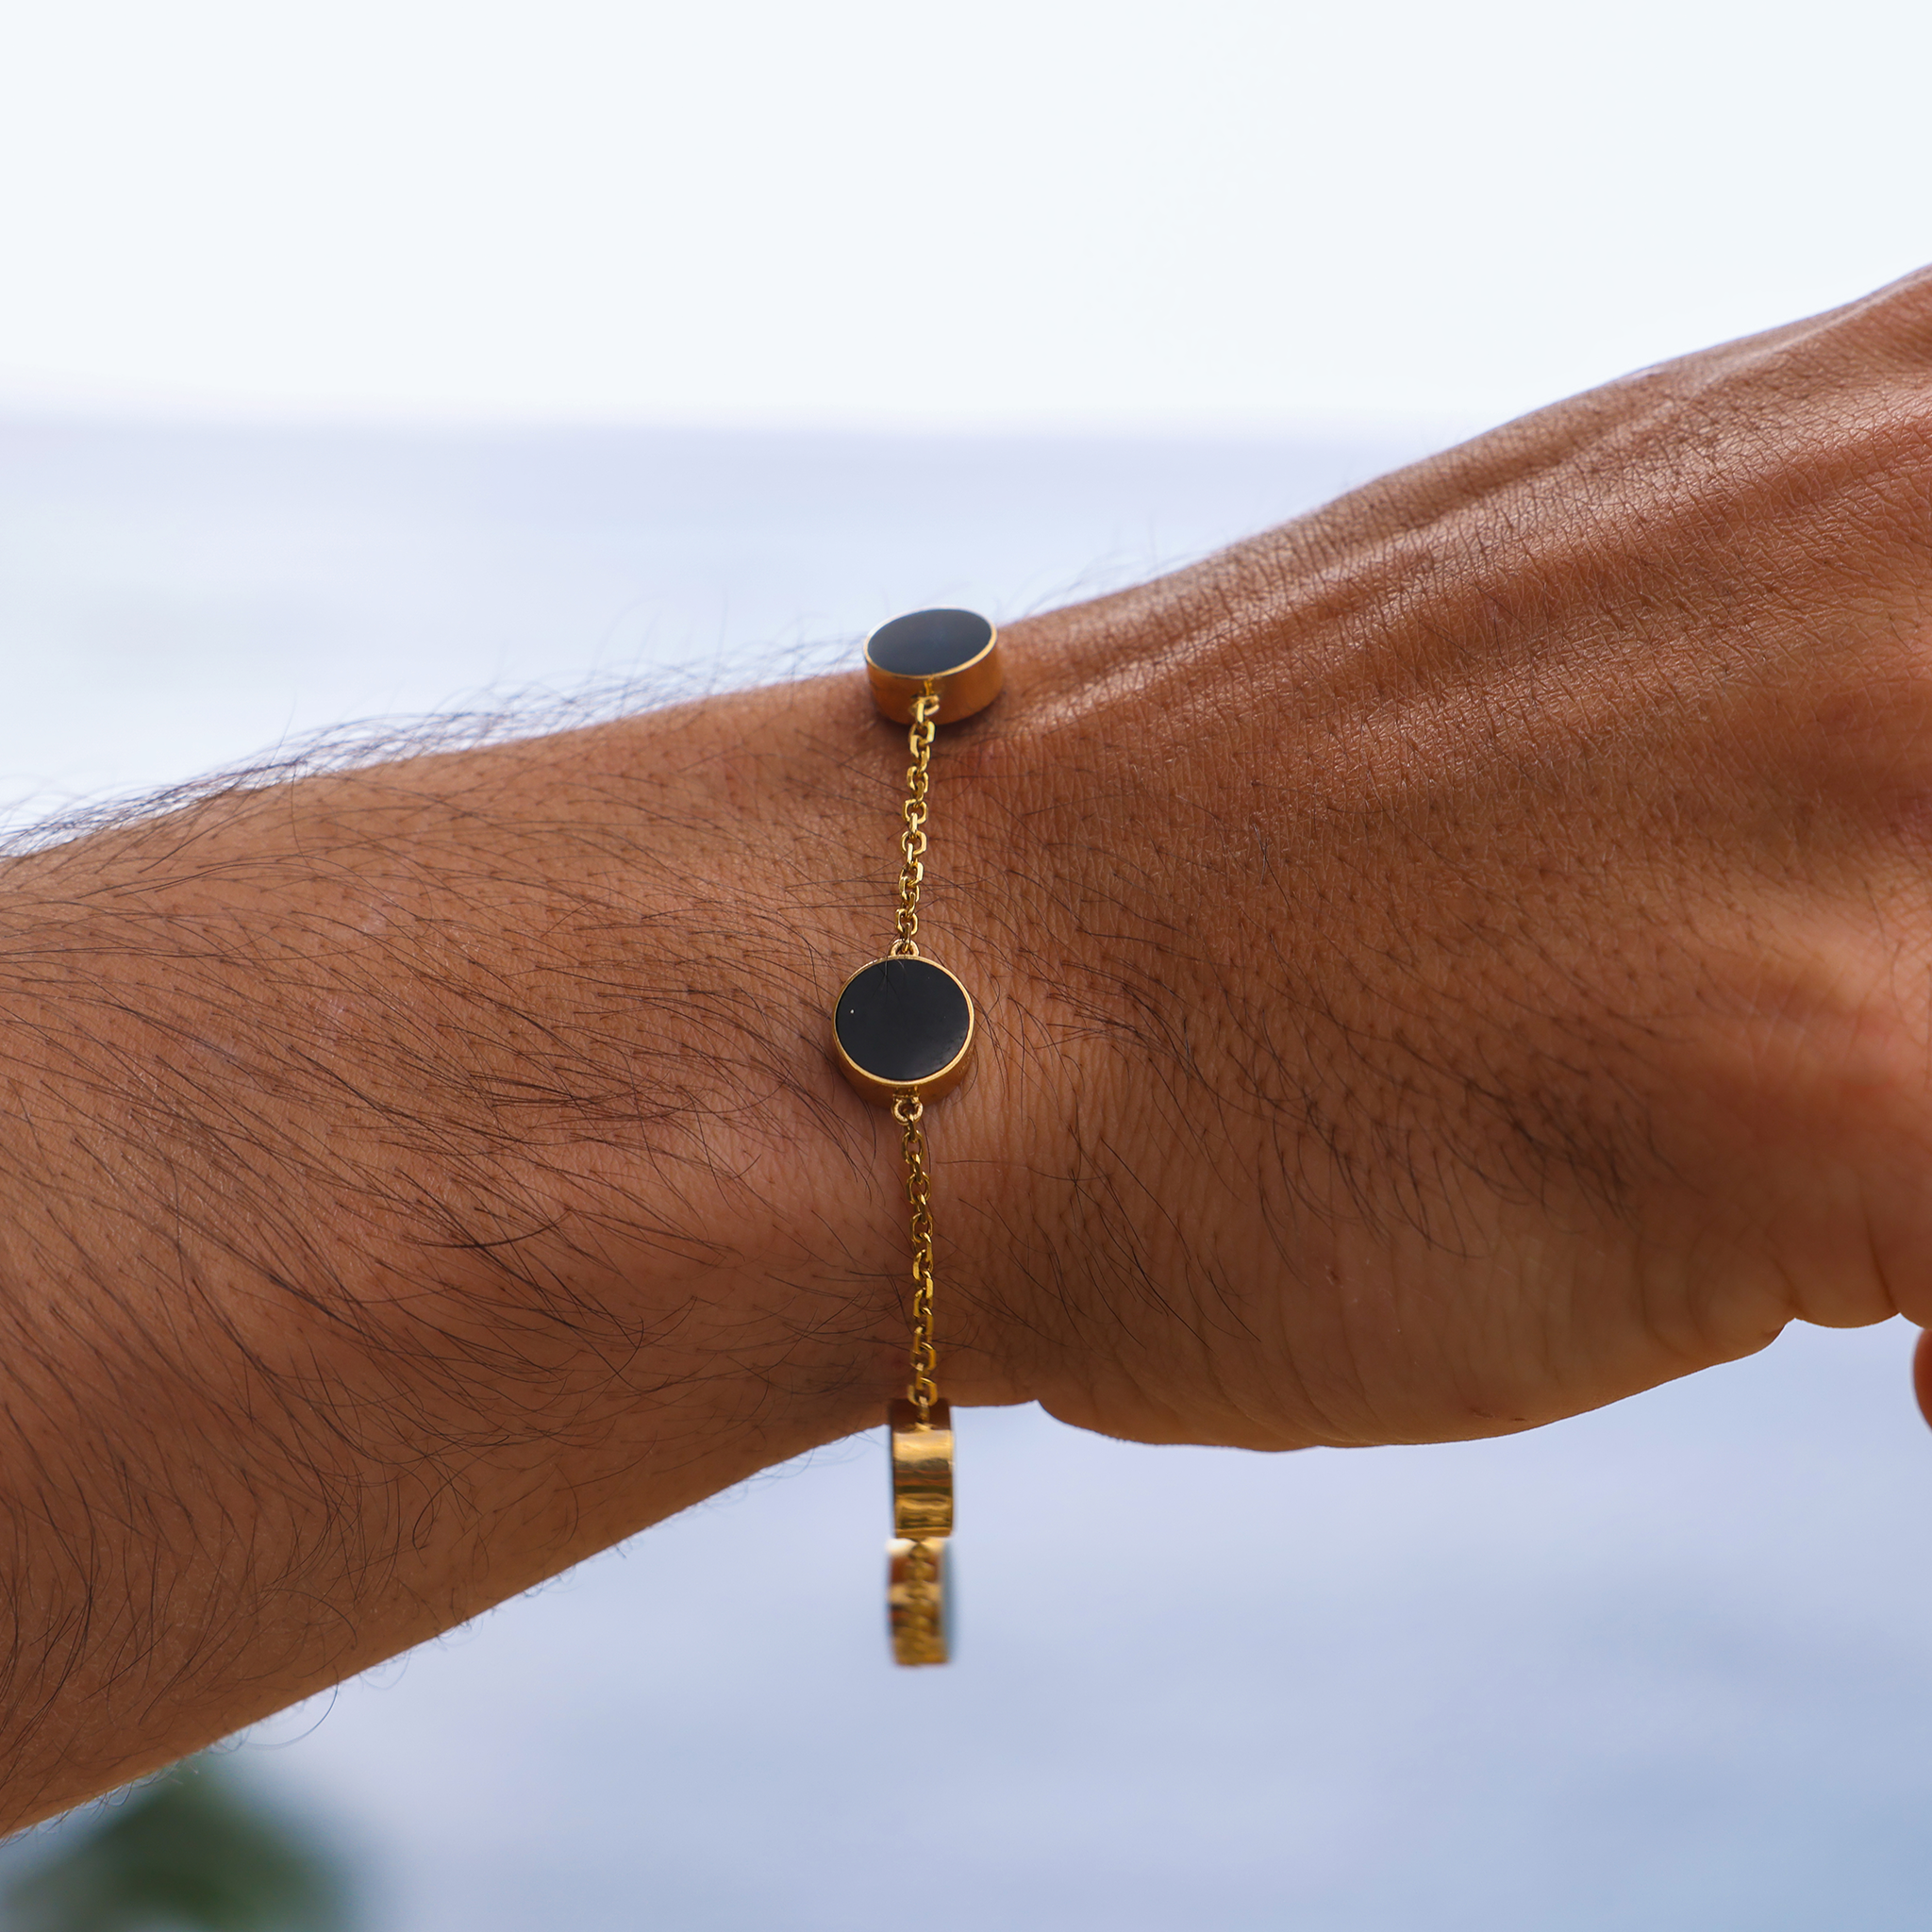 Eclipse Black Coral Bracelet in Gold - 9mm - Size 7.25-8"